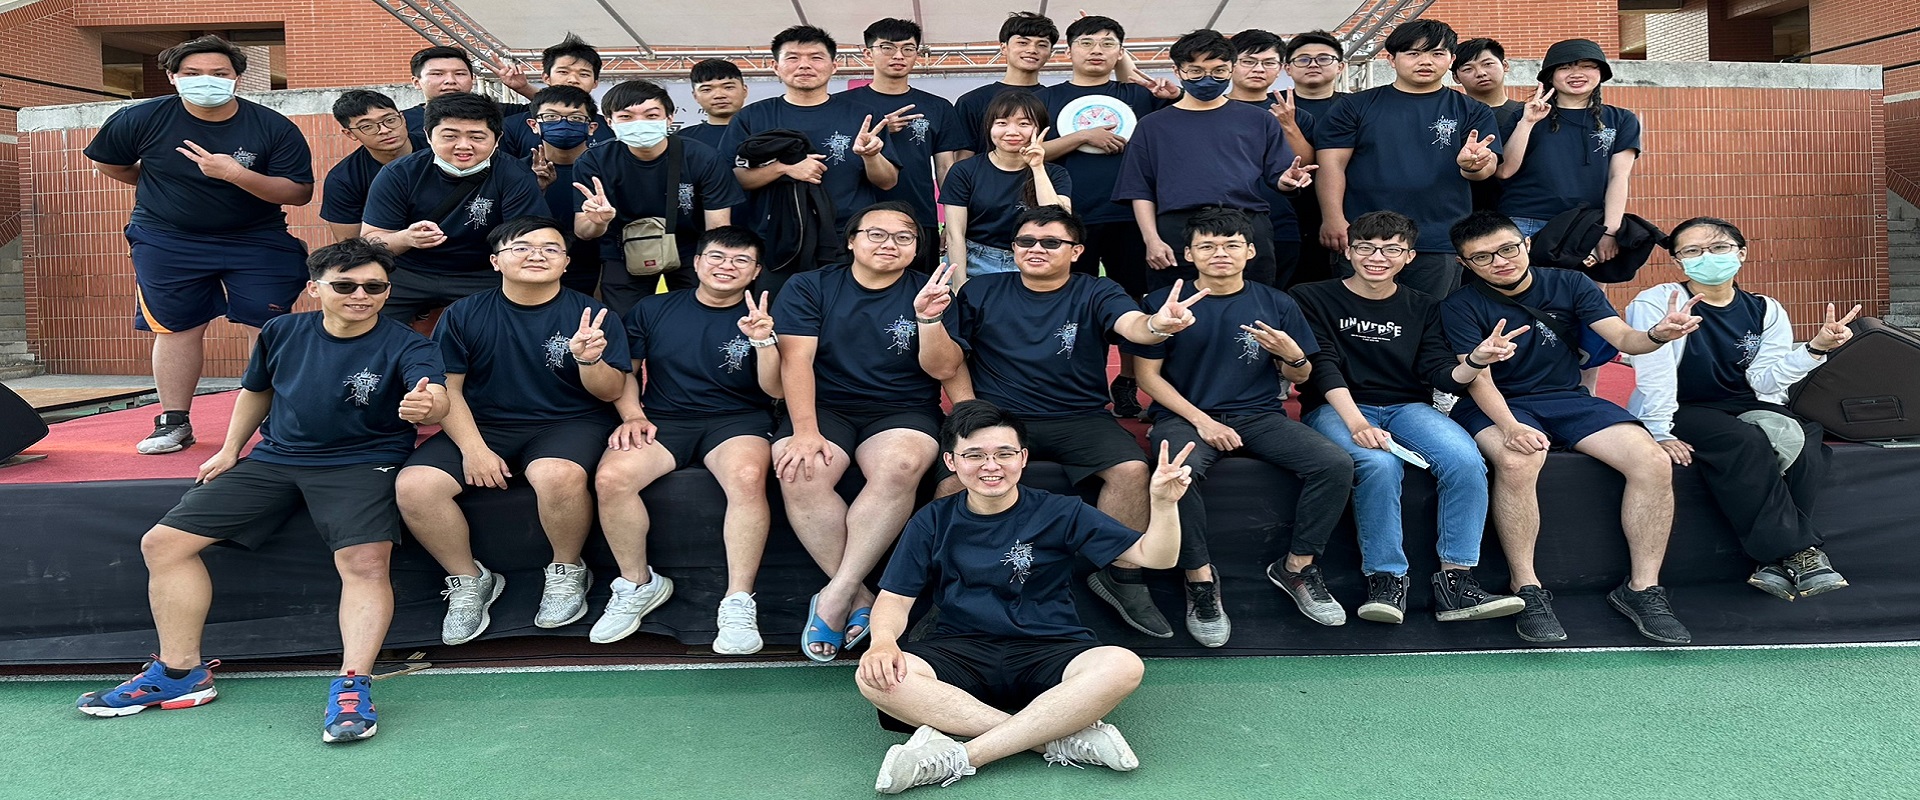 半導體學院學生參加112年度全校運動會《趣味闖關接力賽》榮獲亞軍